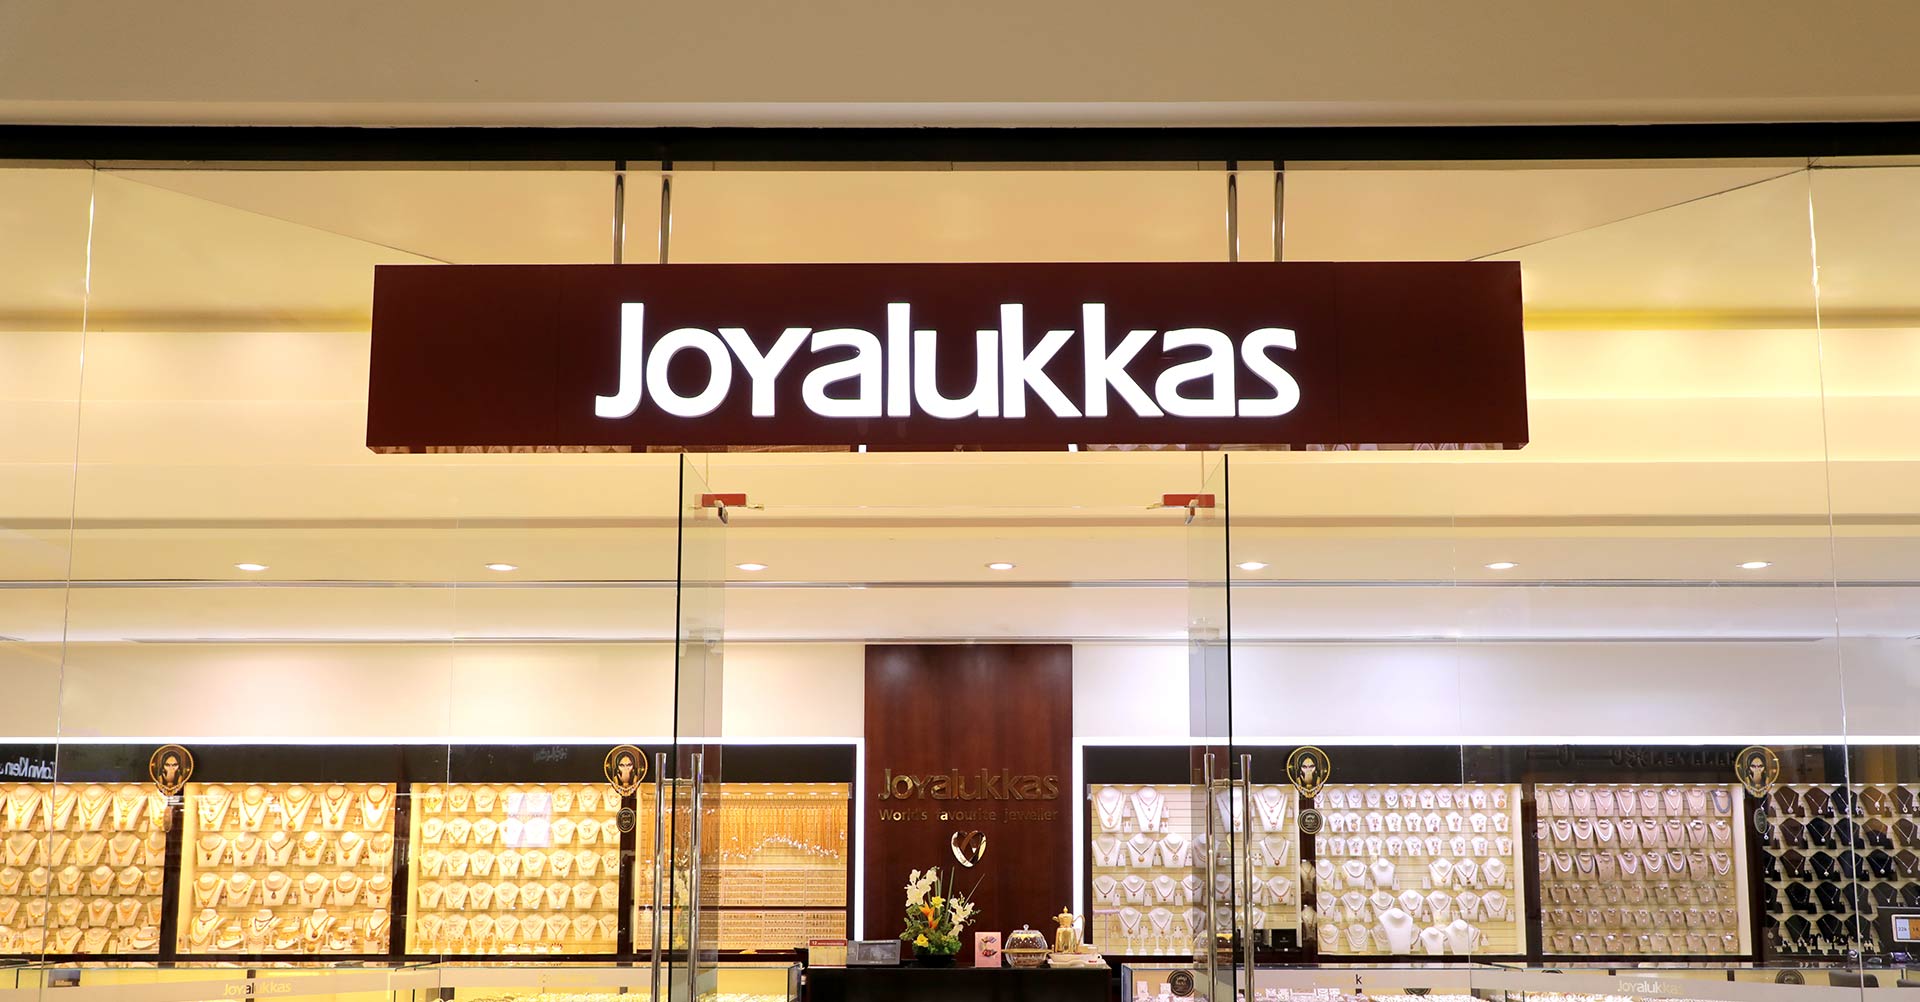 Joyalukkas Brand Name Signage